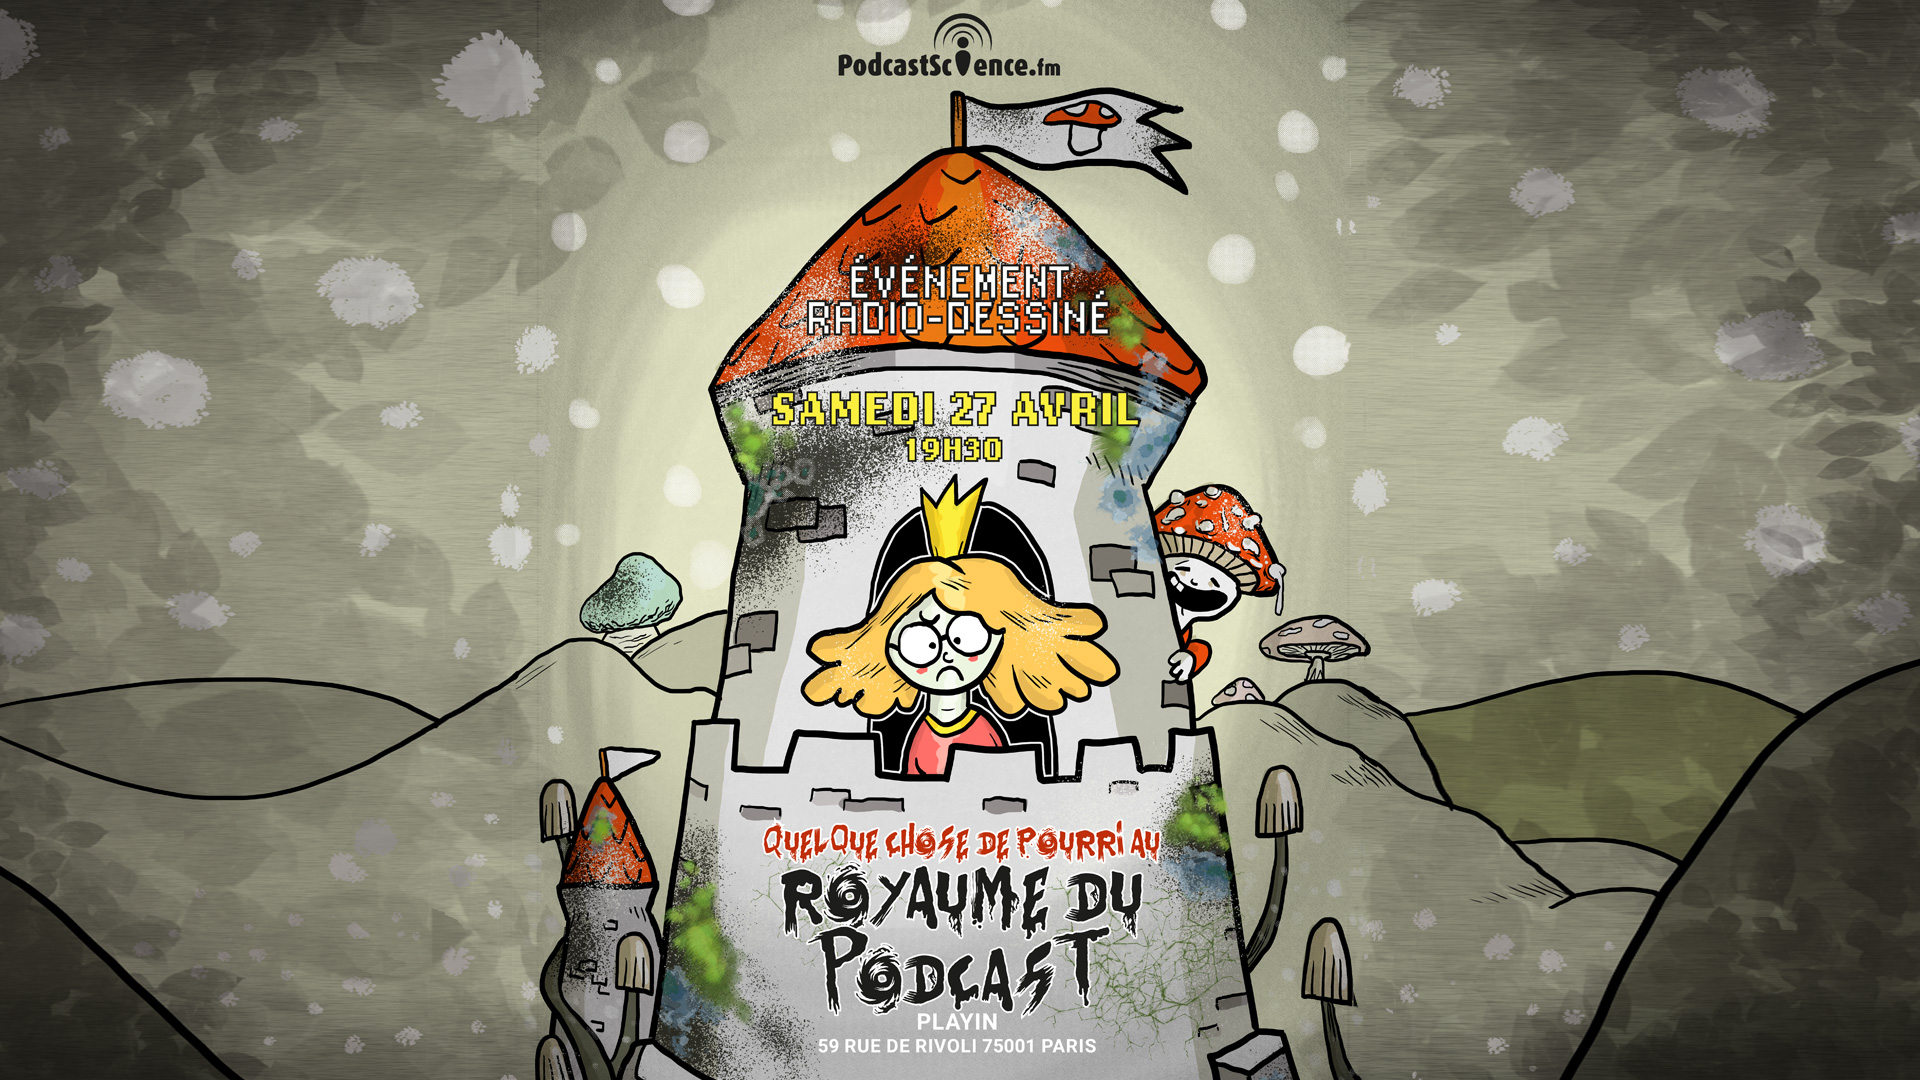 Affiche par Puyo Podcast Science 509 – Quelque chose de pourri au royaume du podcast